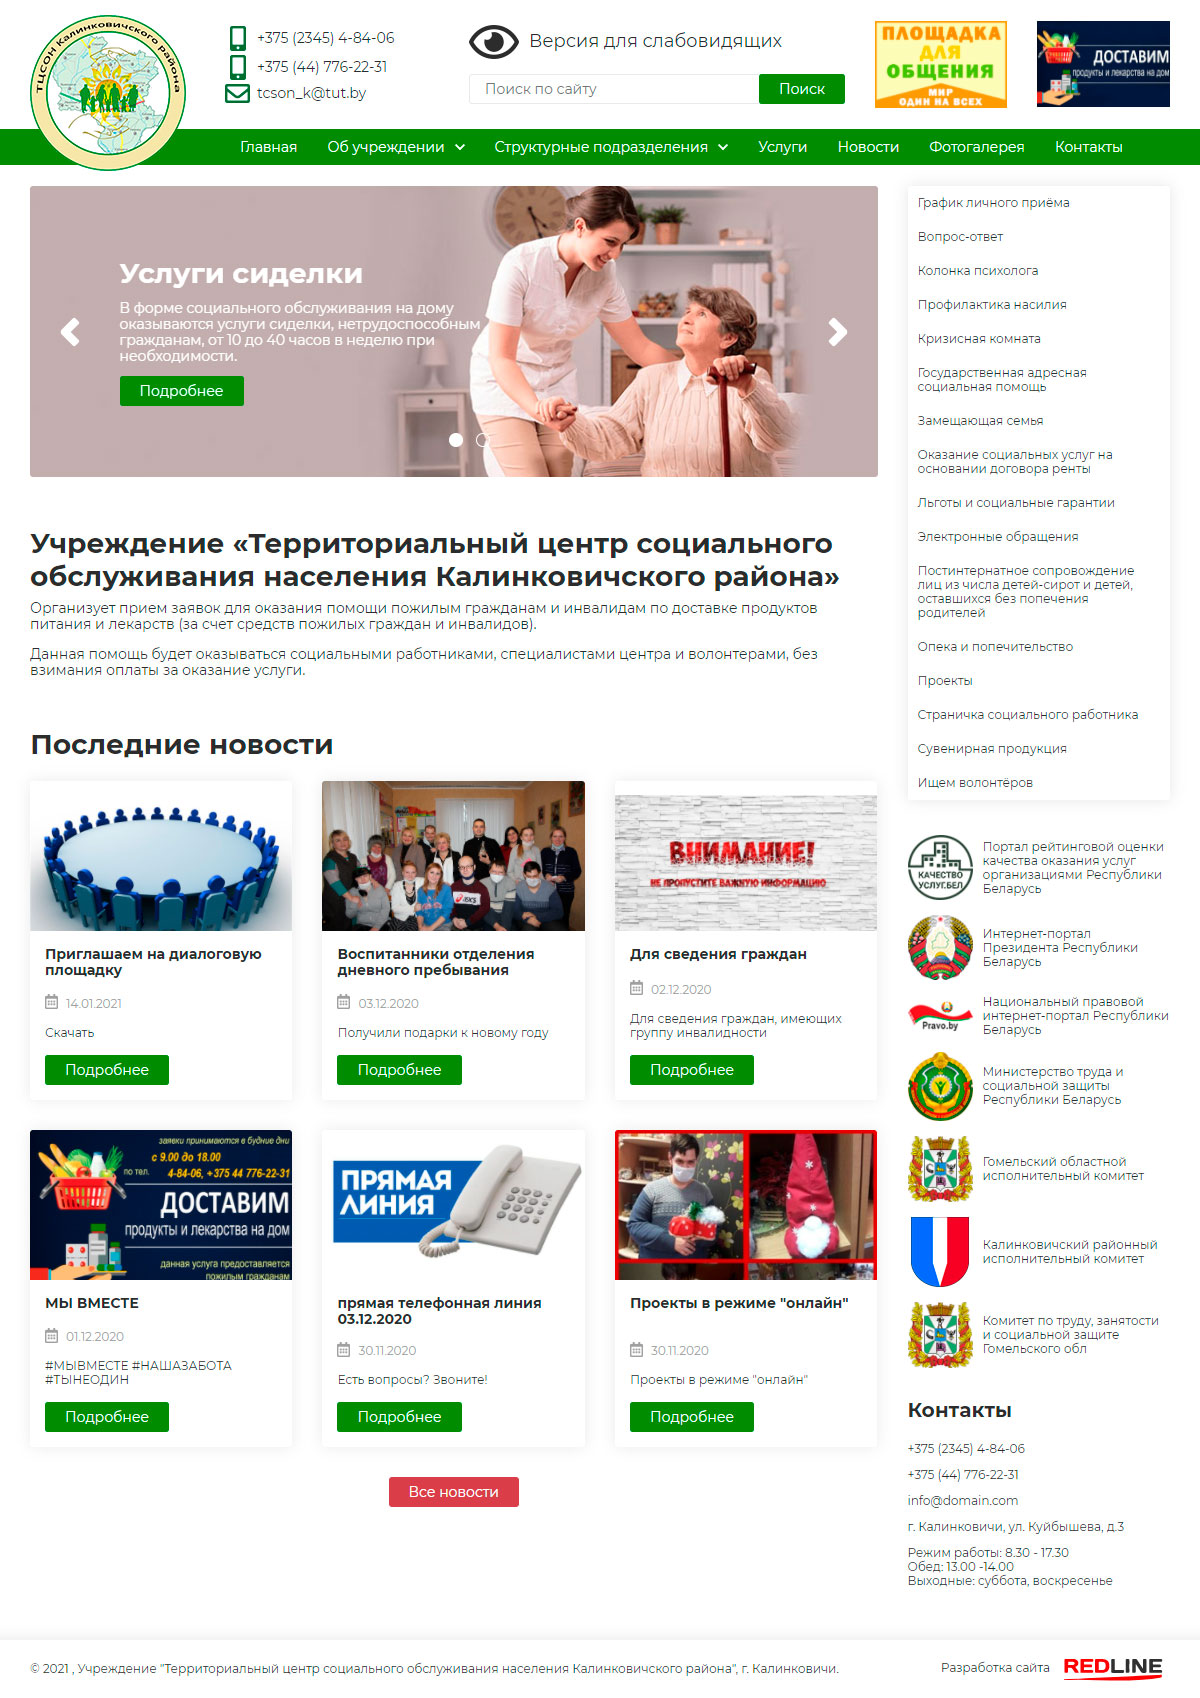 учреждение «территориальный центр социального обслуживания населения калинковичского района»